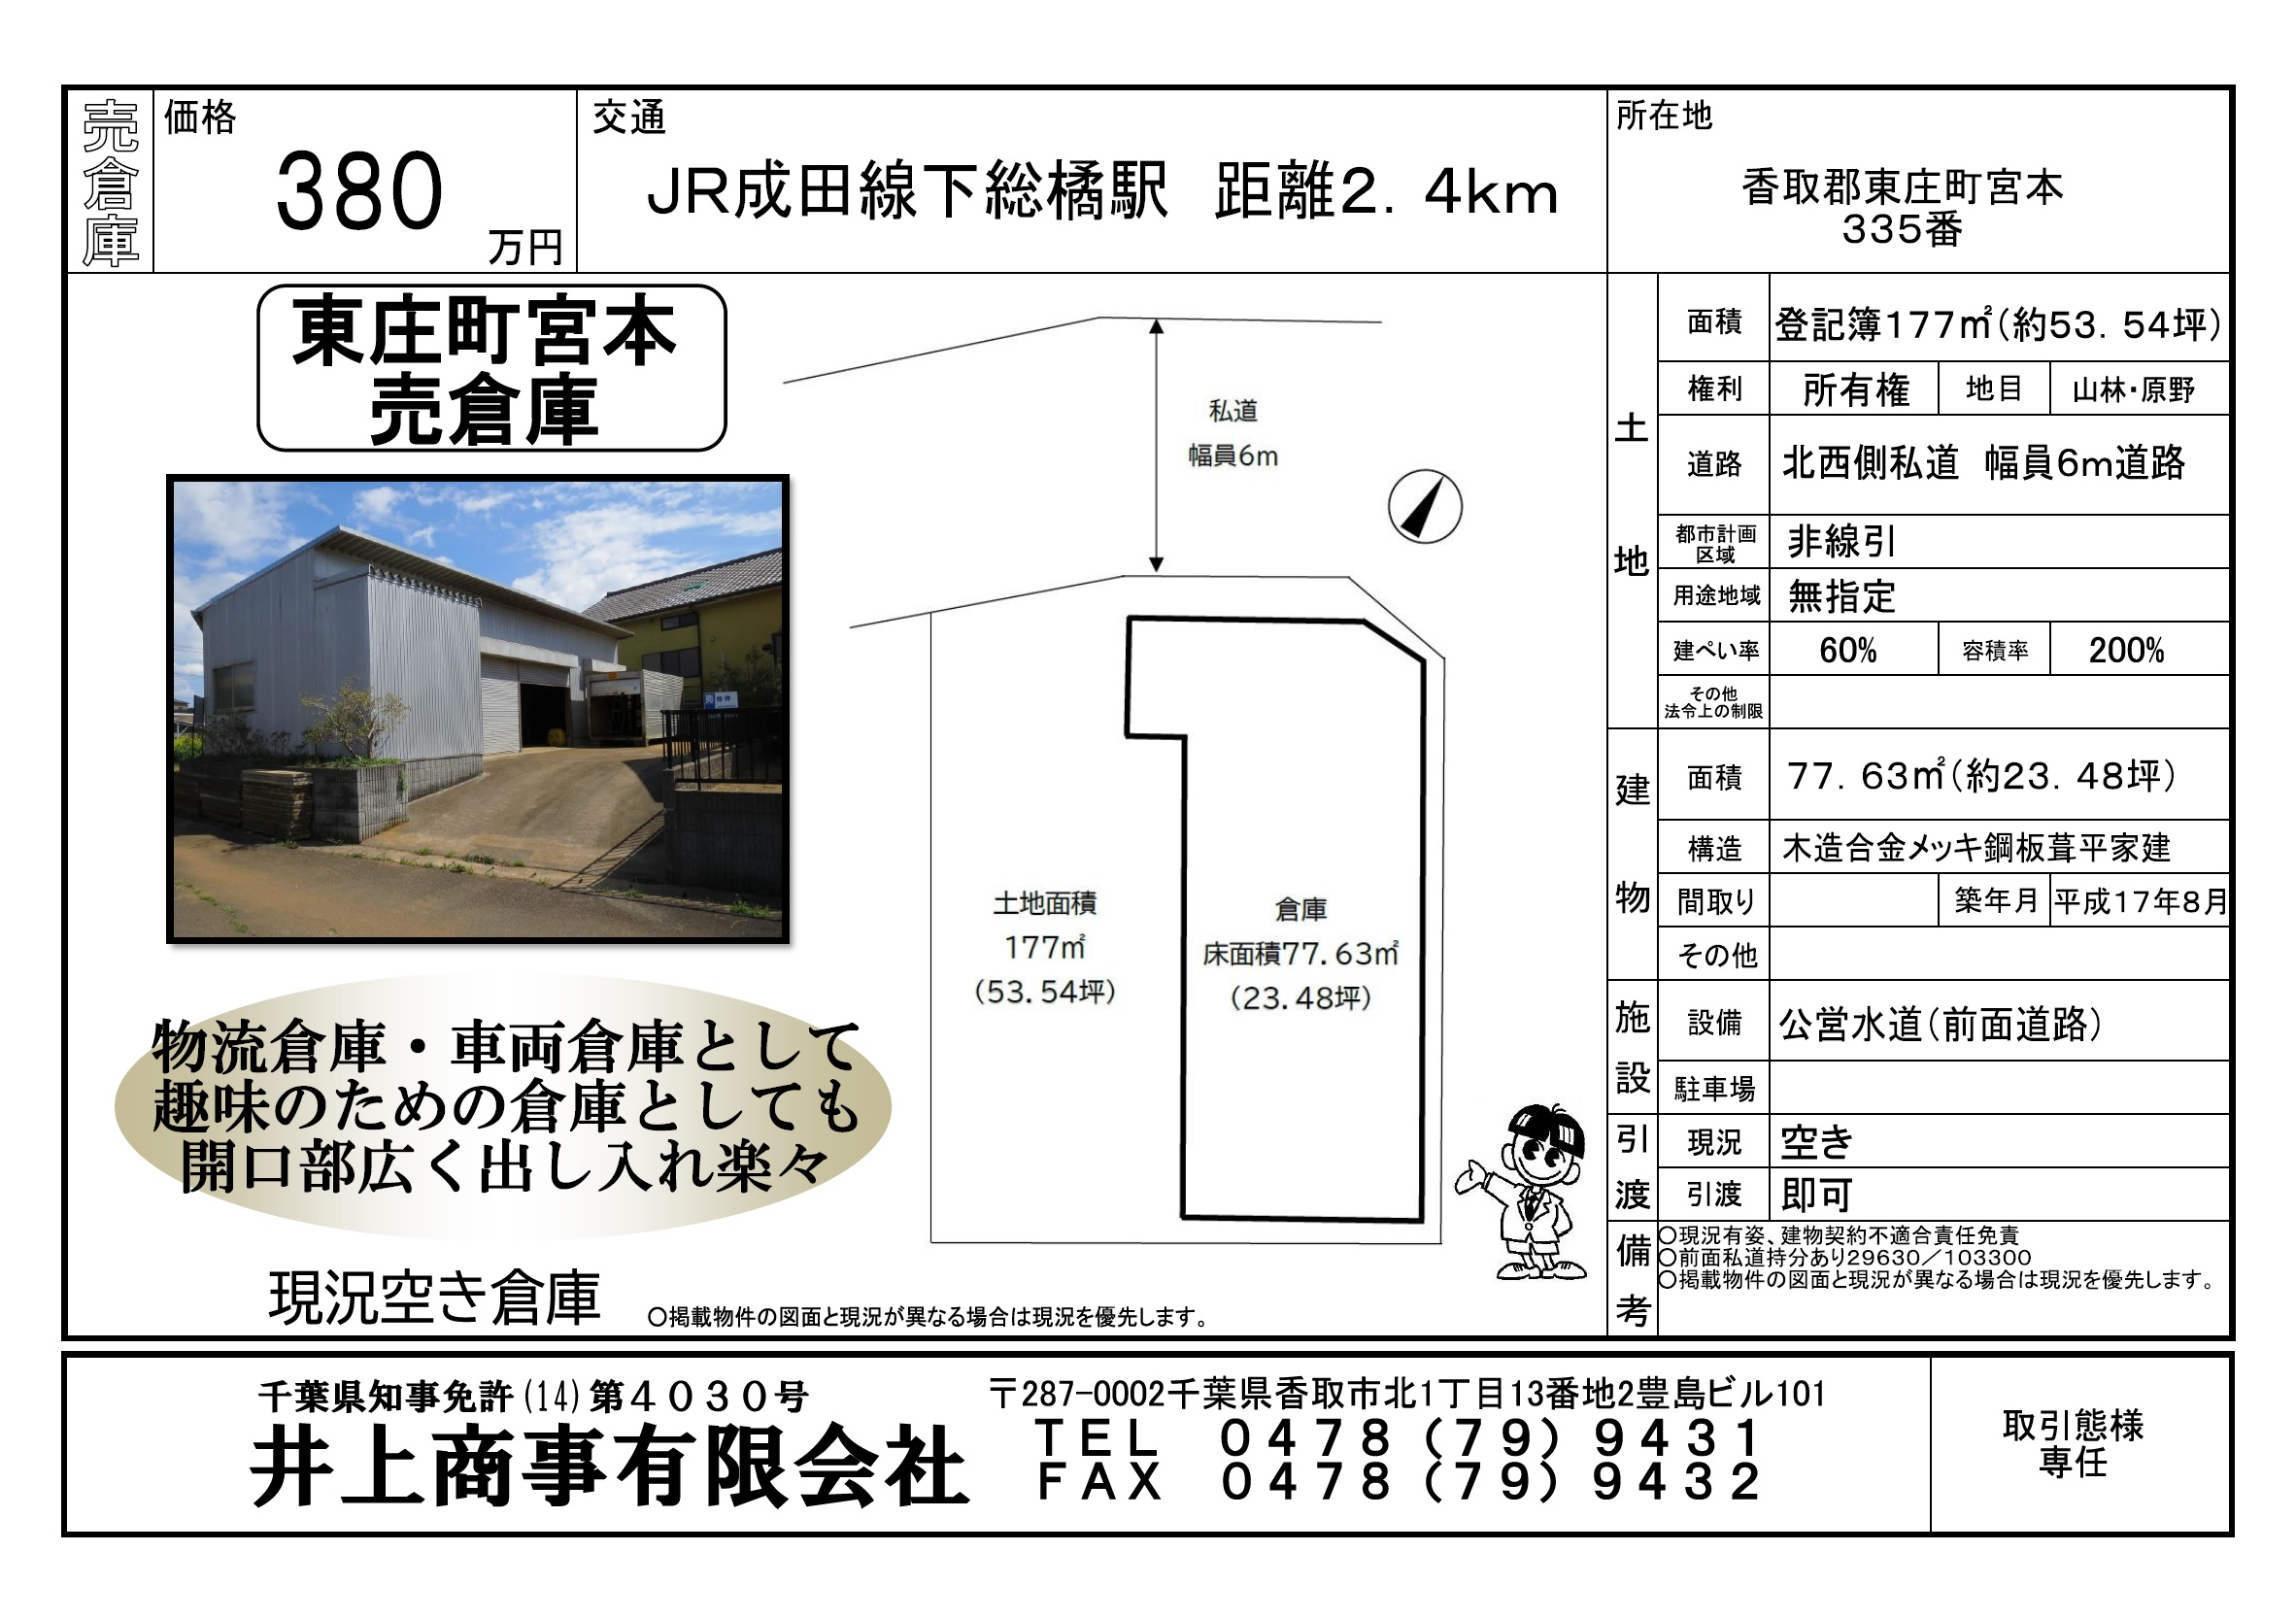 【新規物件】香取郡東庄町宮本売倉庫。色々な用途で利用できます。